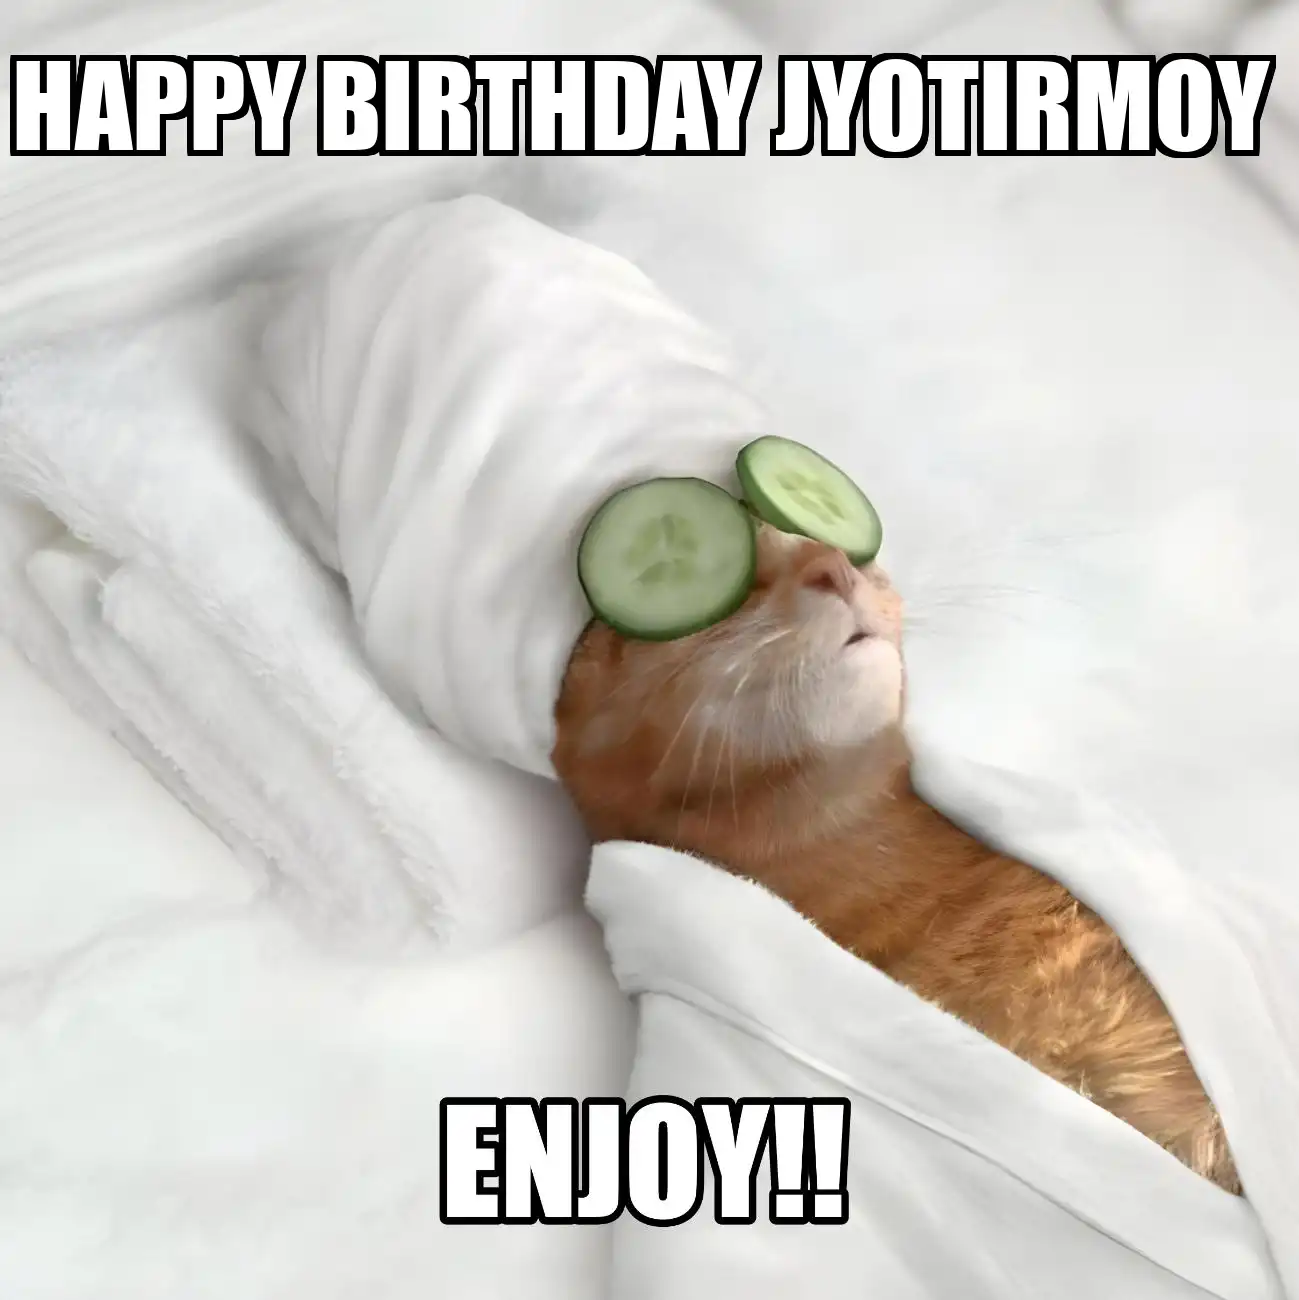 Happy Birthday Jyotirmoy Enjoy Cat Meme